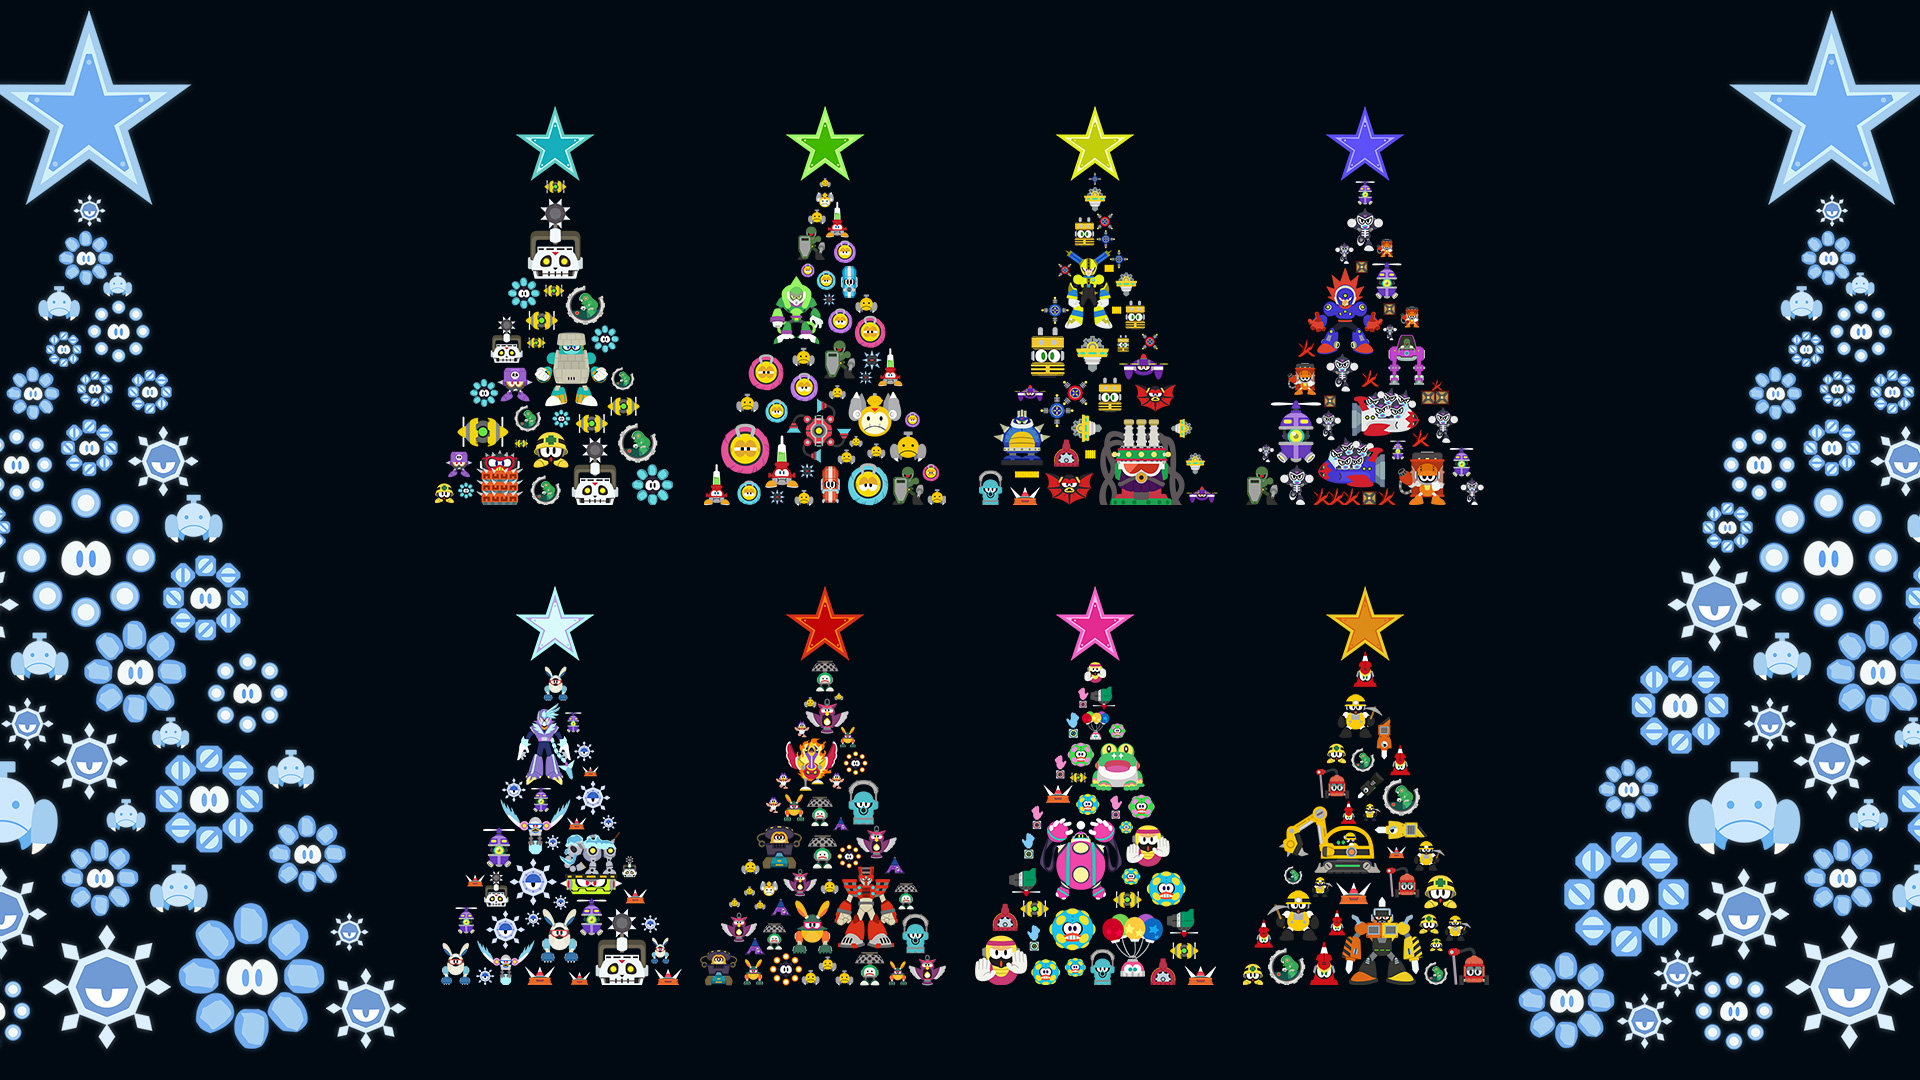 メリークリスマス ロックマン11 クリスマス描き下ろし待ち受けプレゼント ロックマンユニティ ウッチーのブログ